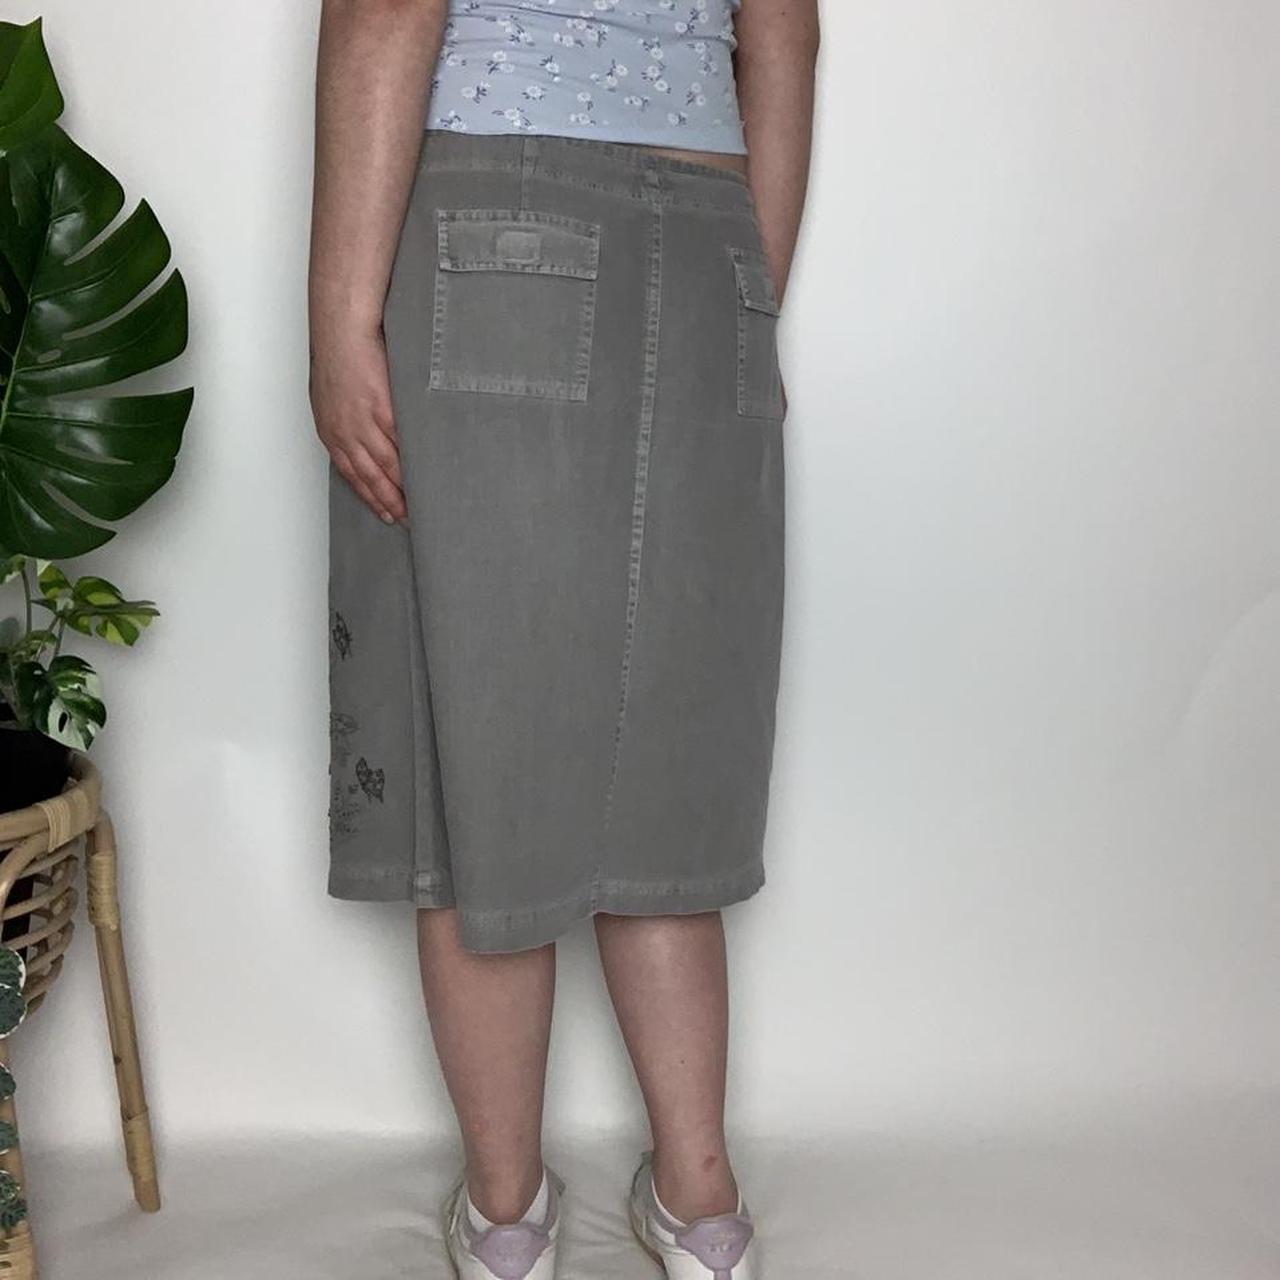 Amazing embroidered vintage y2k cottagecore/pixiecore khaki skirt